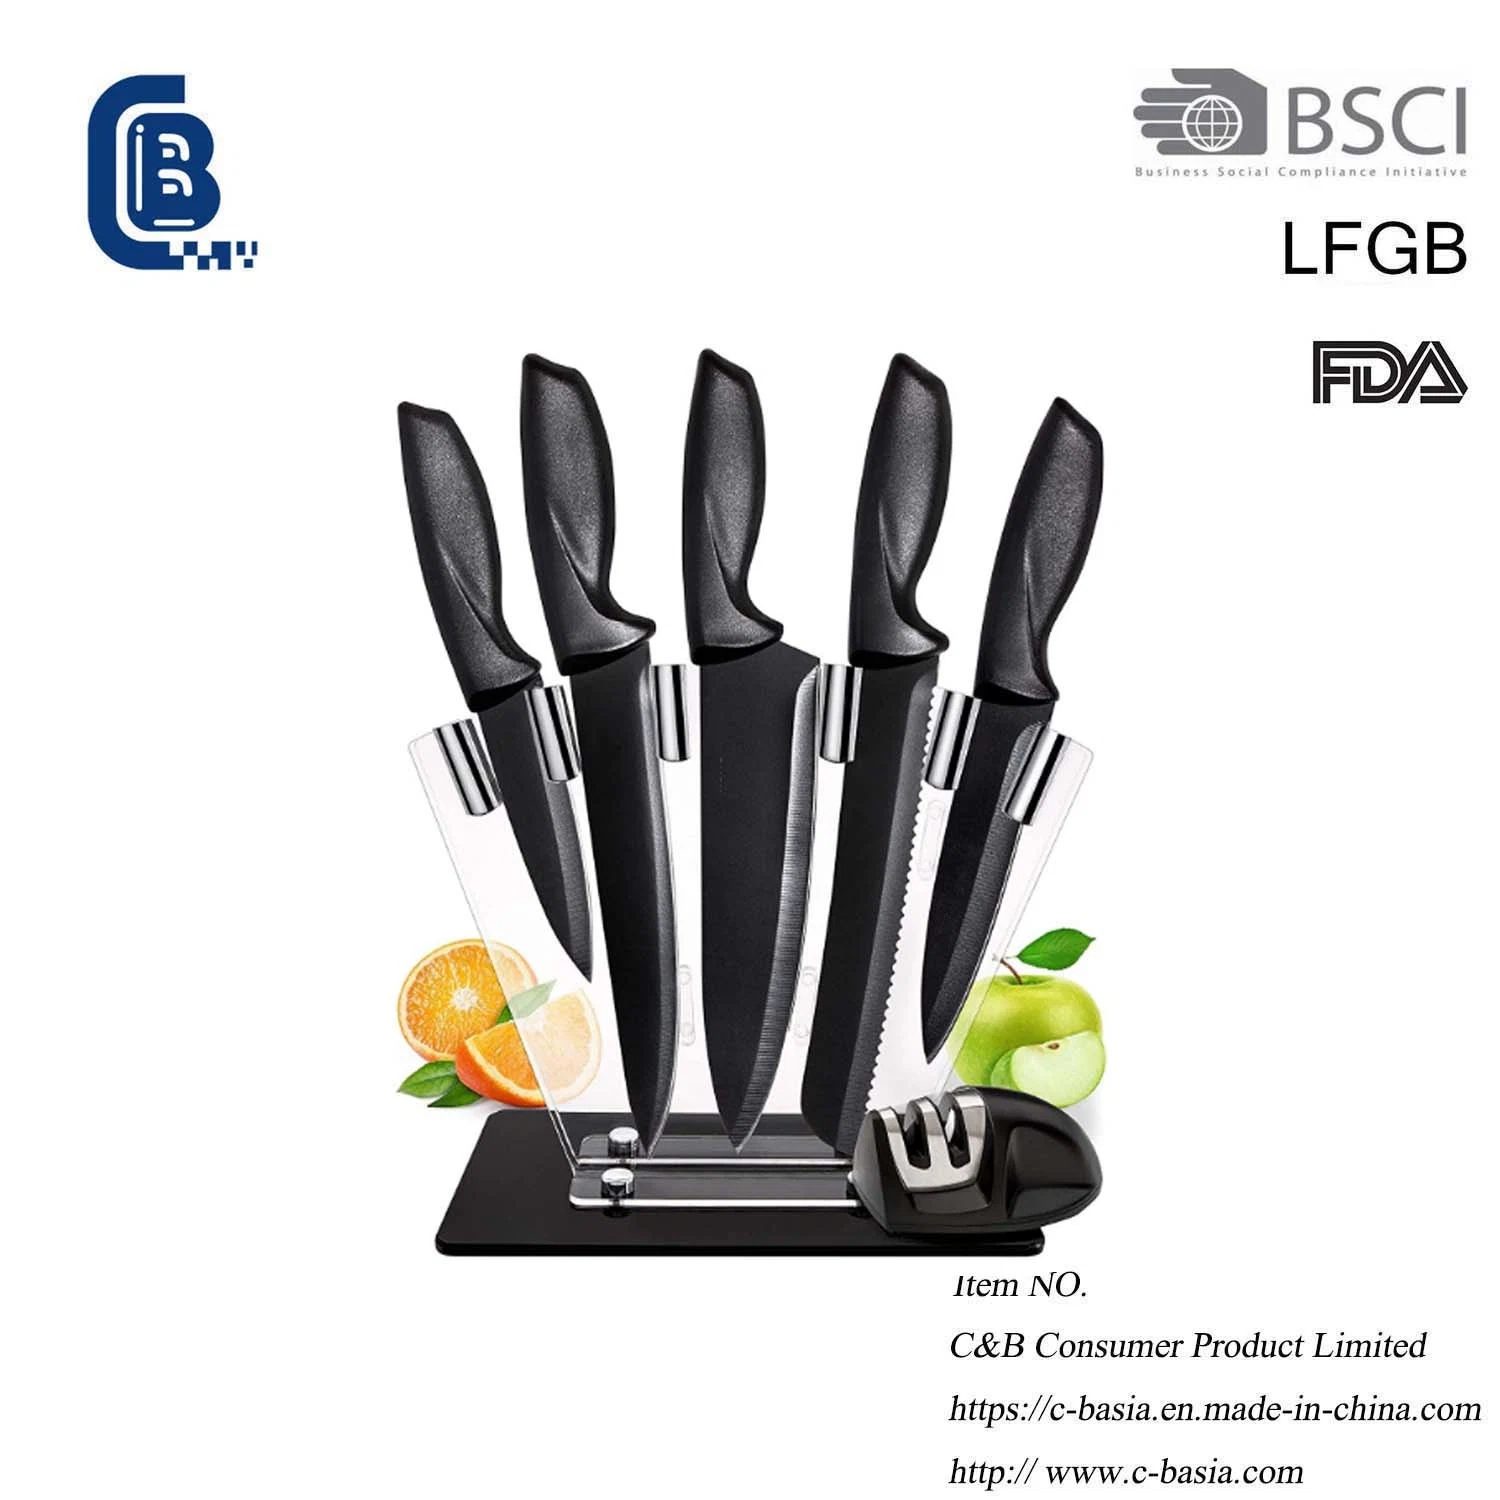 أدوات المطبخ مجموعة سكين الشيف من الفولاذ المقاوم للصدأ مع قطع الحامل اللحوم الخضار كوك Knife Wiko أدوات المطبخ